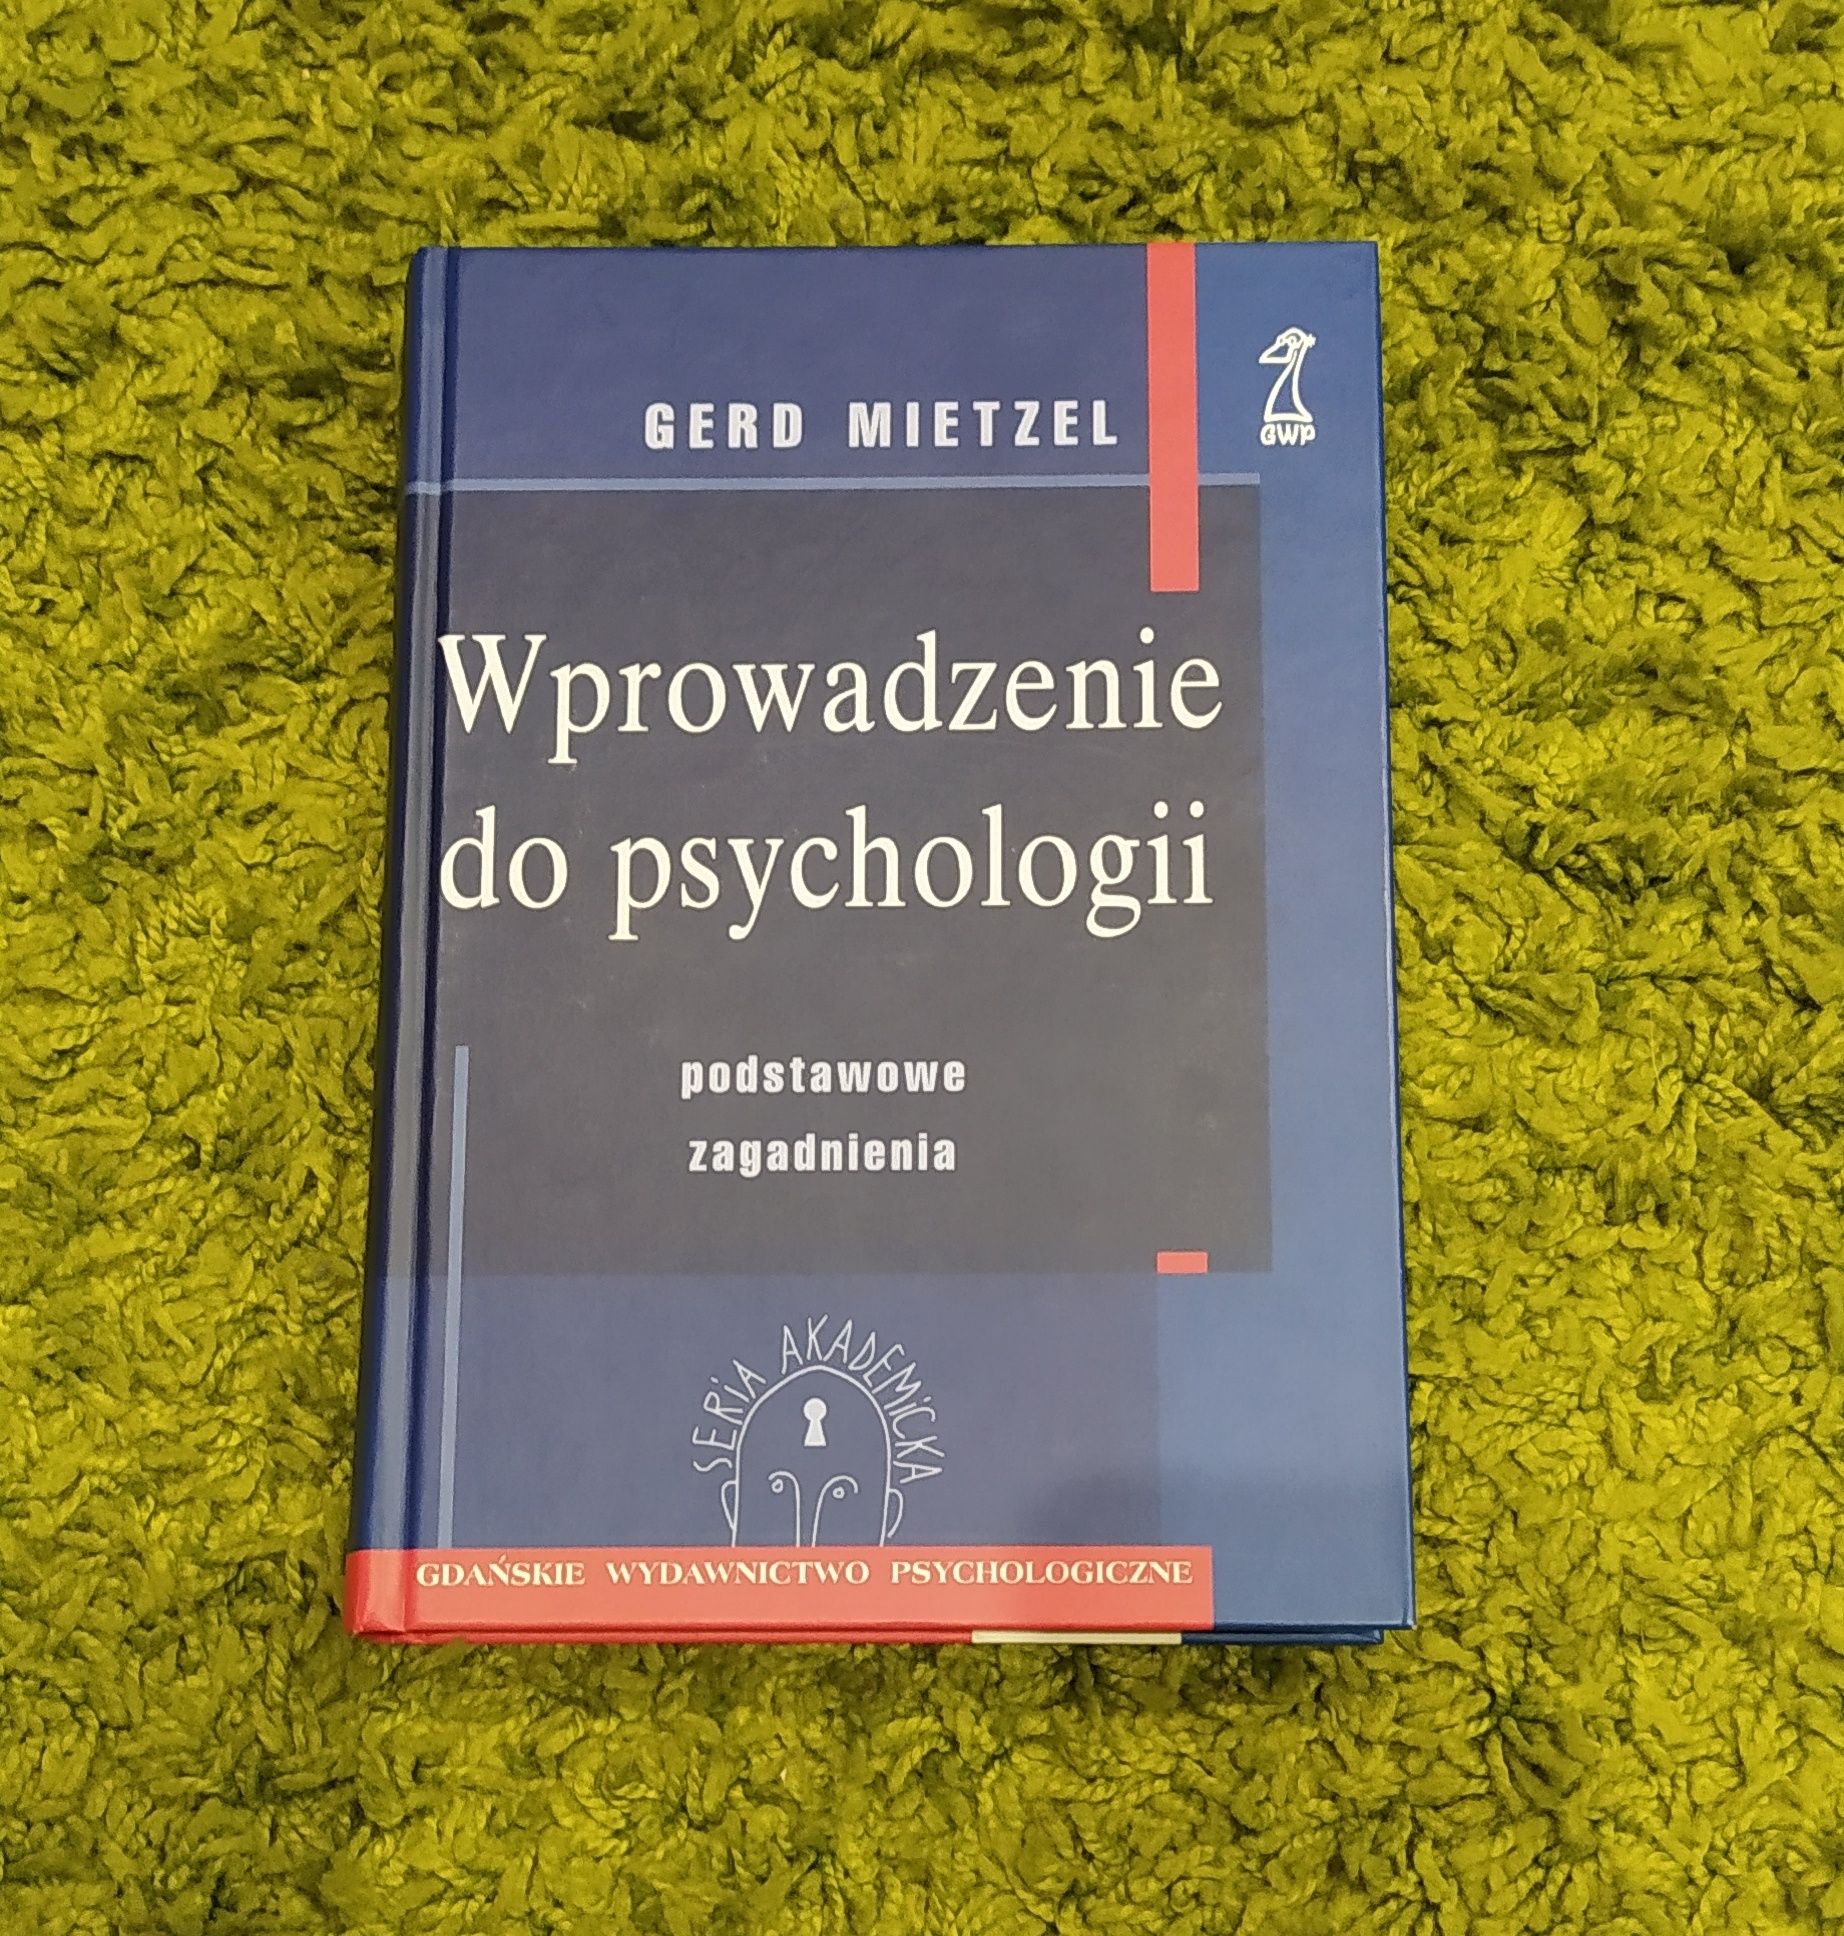 "Wprowadzenie do psychologii" Gerd Mietzel